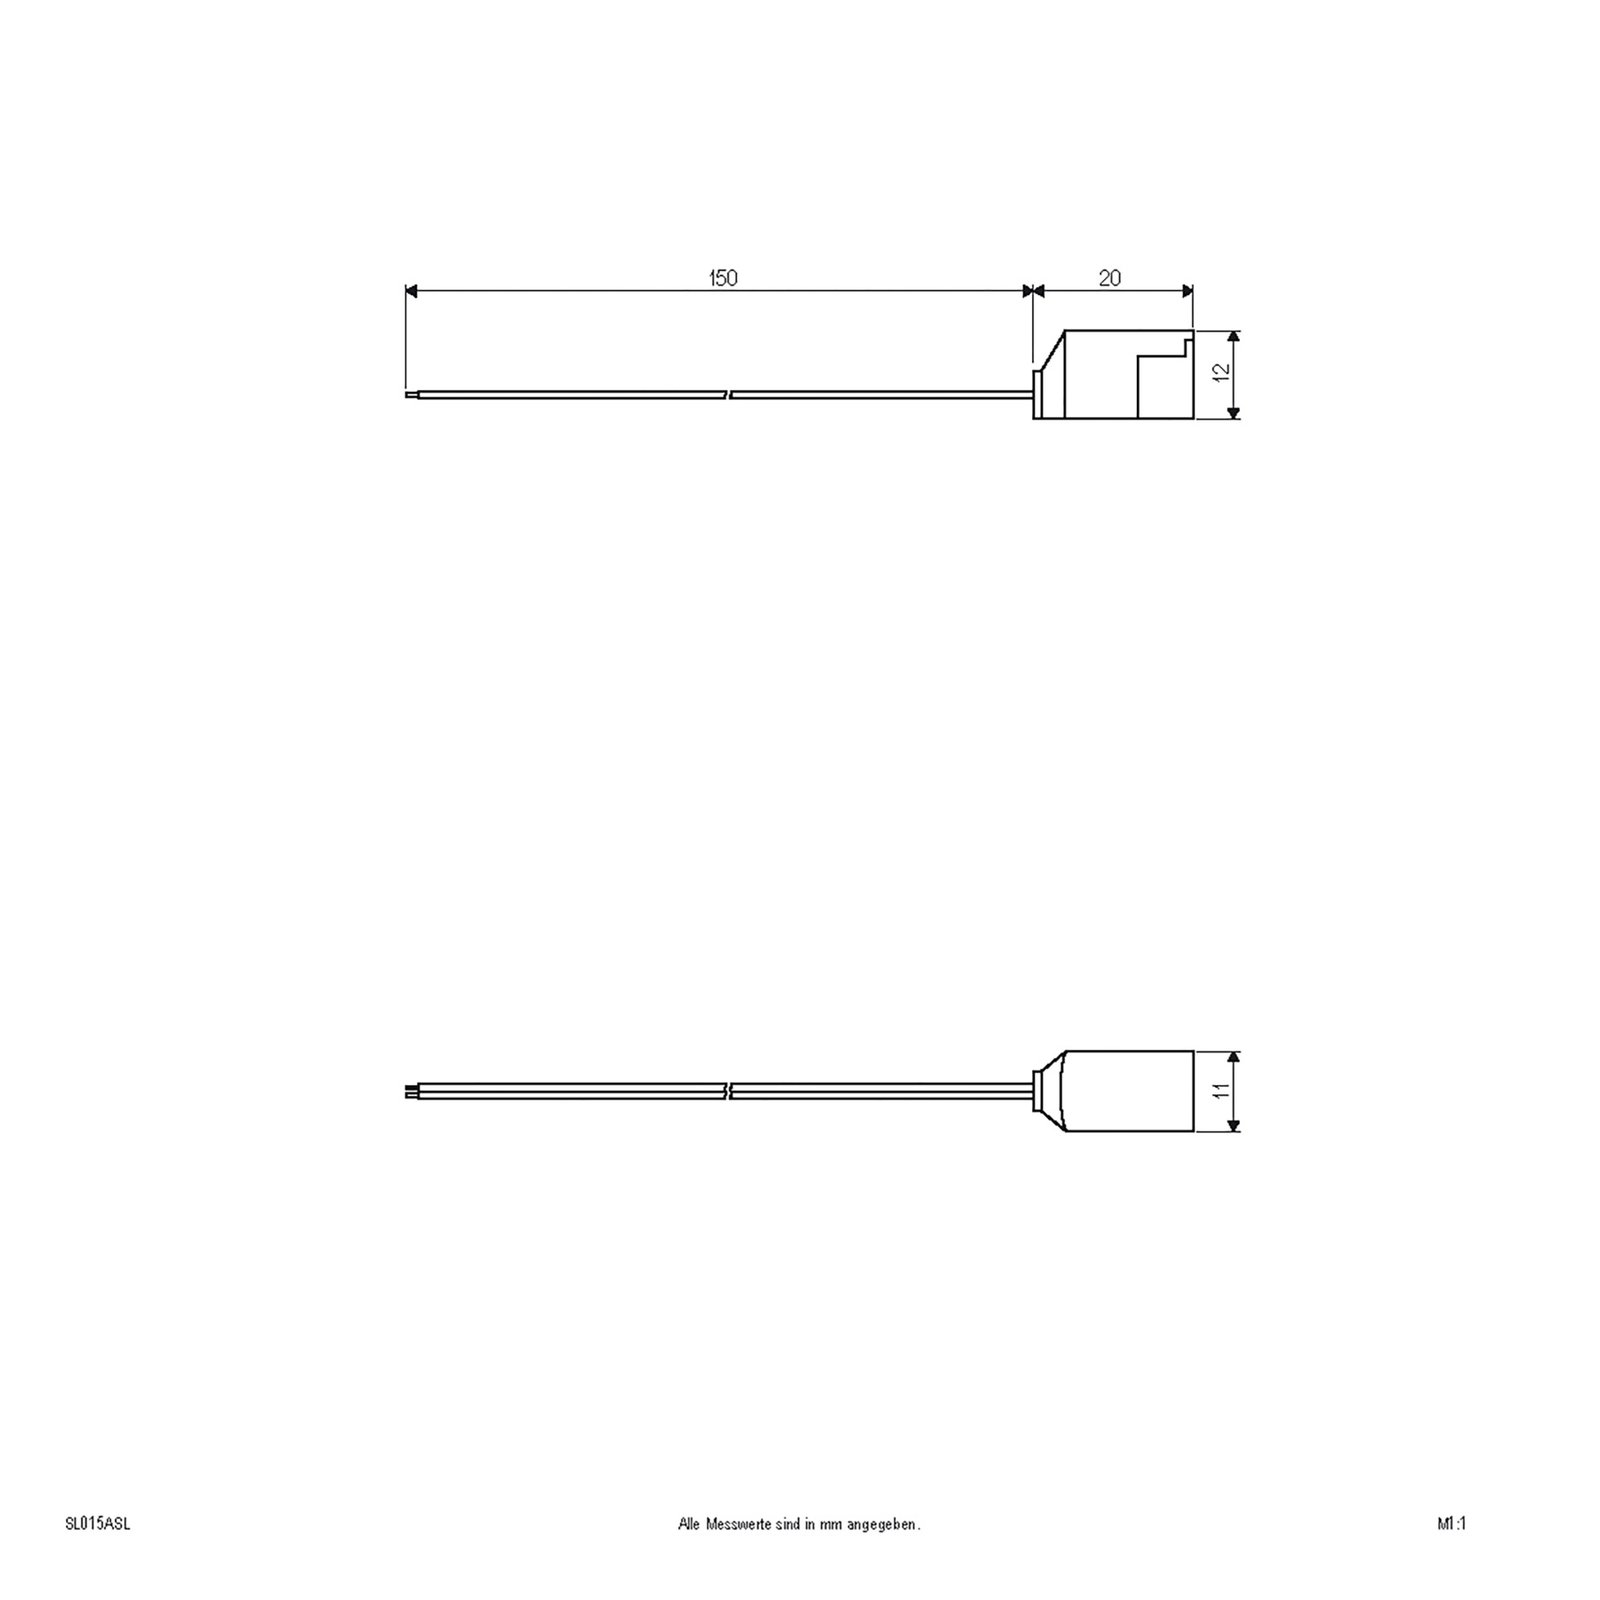 Aansluitkabel voor Bordo-serie, lengte: 15 cm